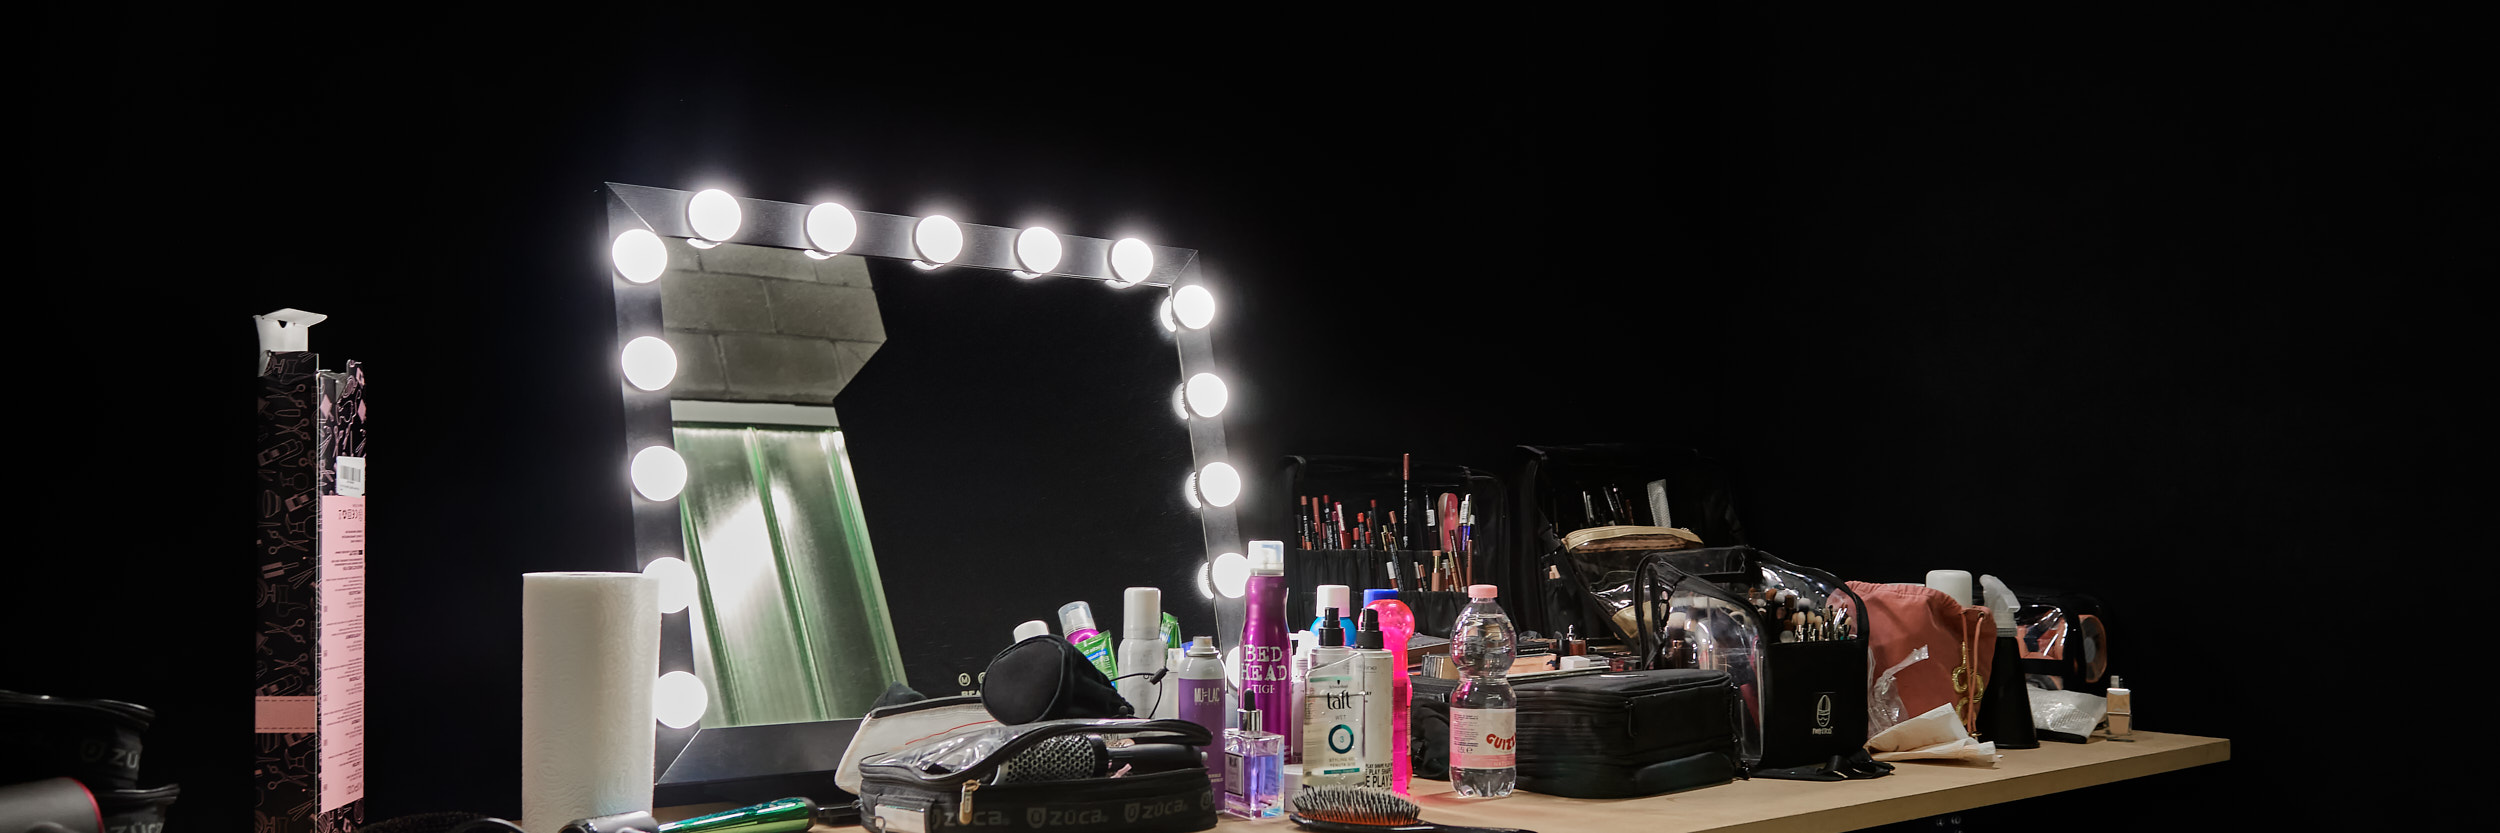 LCBstudio - area make-up con tavoli, specchio con luci e prodotti